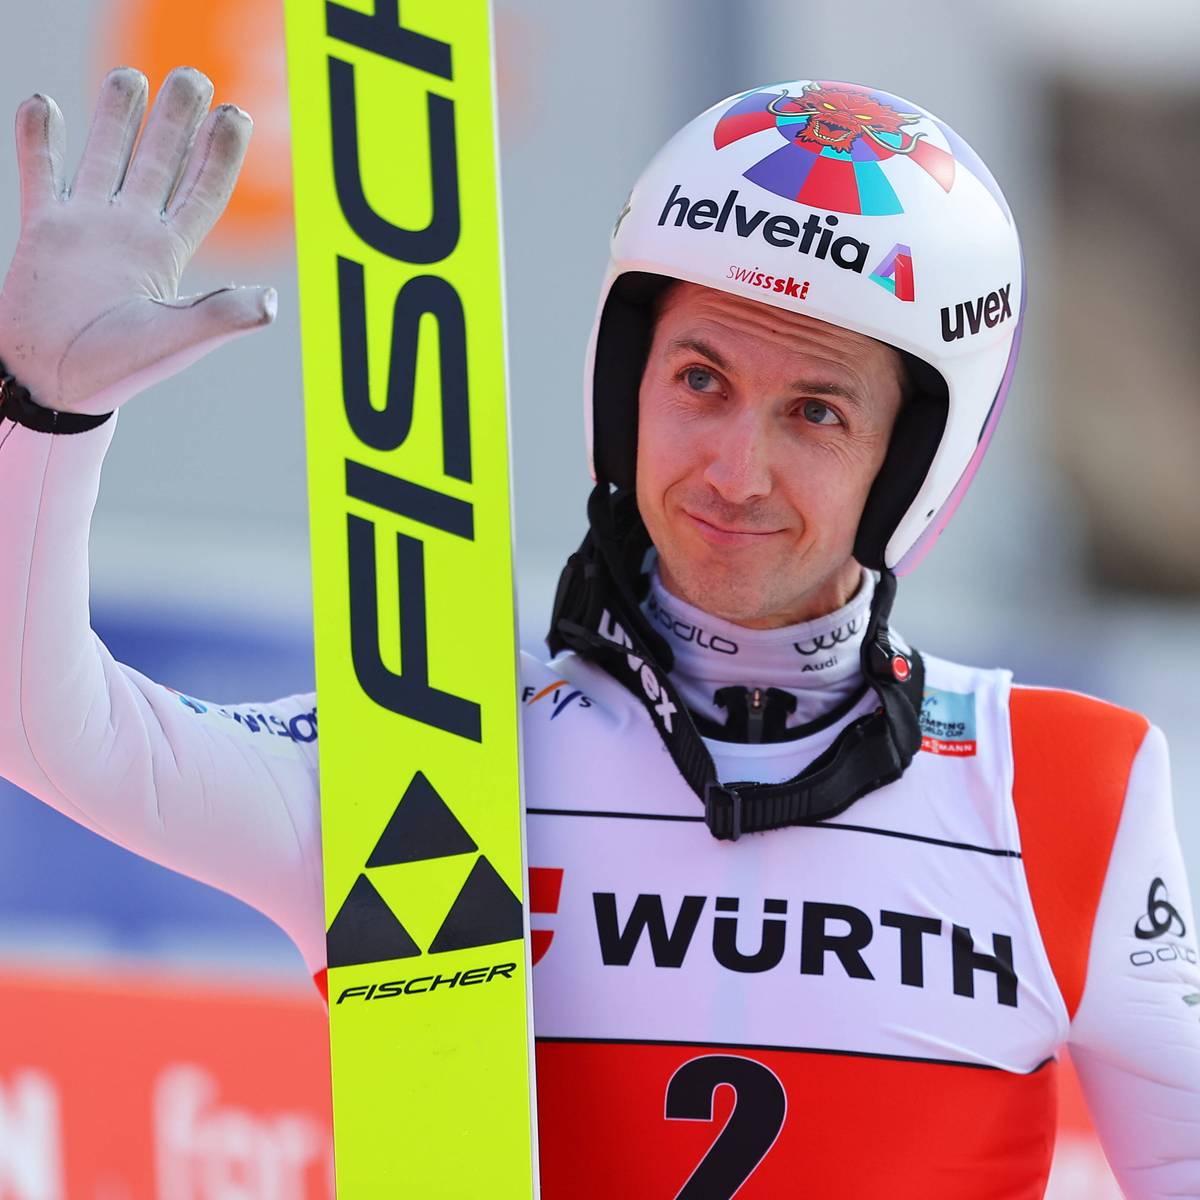 Simon Ammann verkündet, dass er seine Karriere fortsetzt, jedoch macht der Schweizer Skispringer klar, dass der Sport nicht mehr die höchste Priorität in seinem Leben hat.